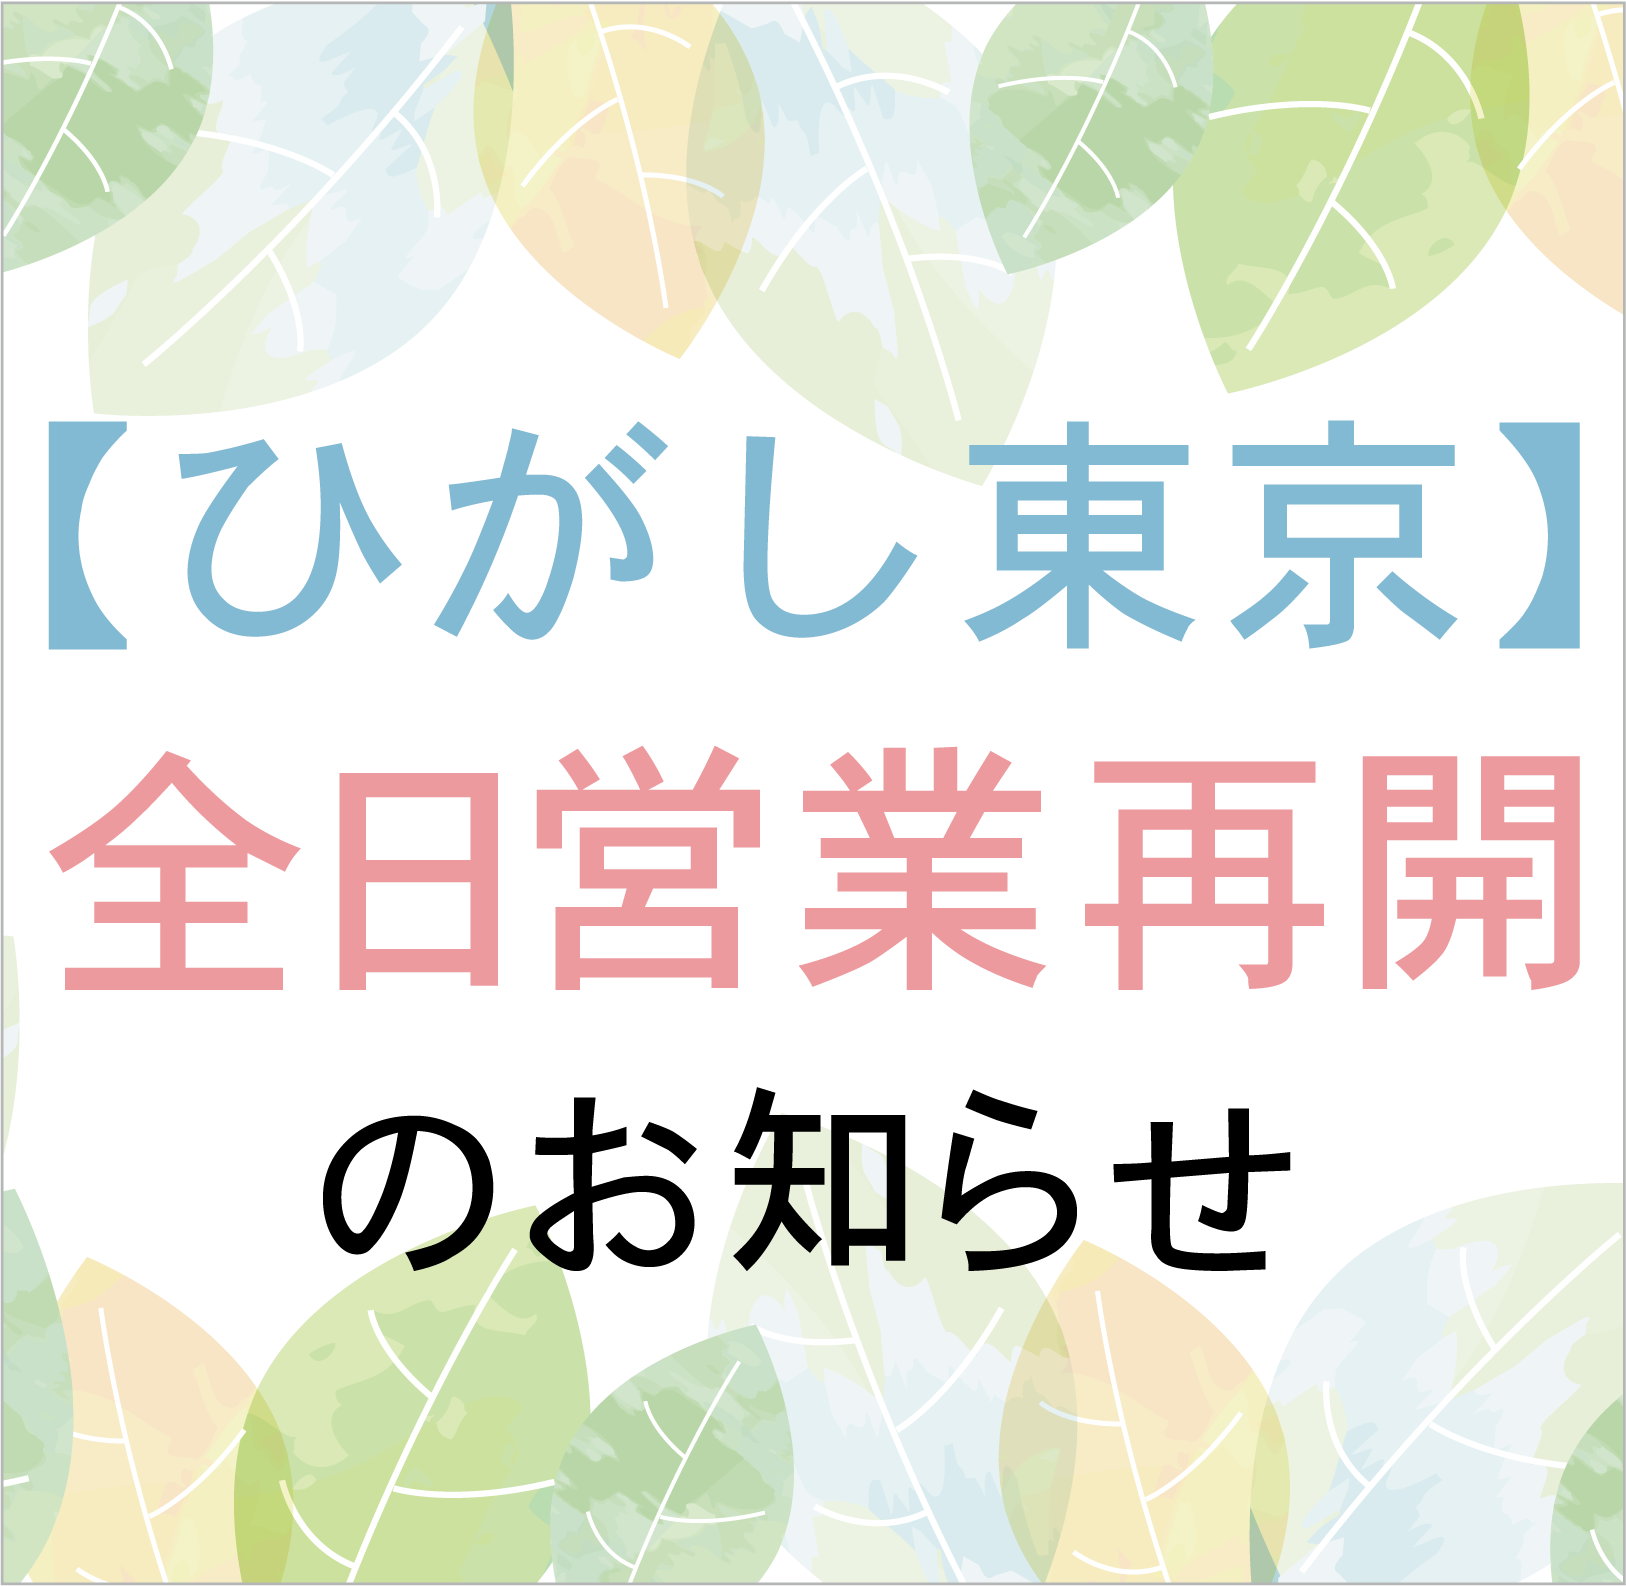 【ひがし東京】全日営業再開のお知らせ(2022年3月24日)